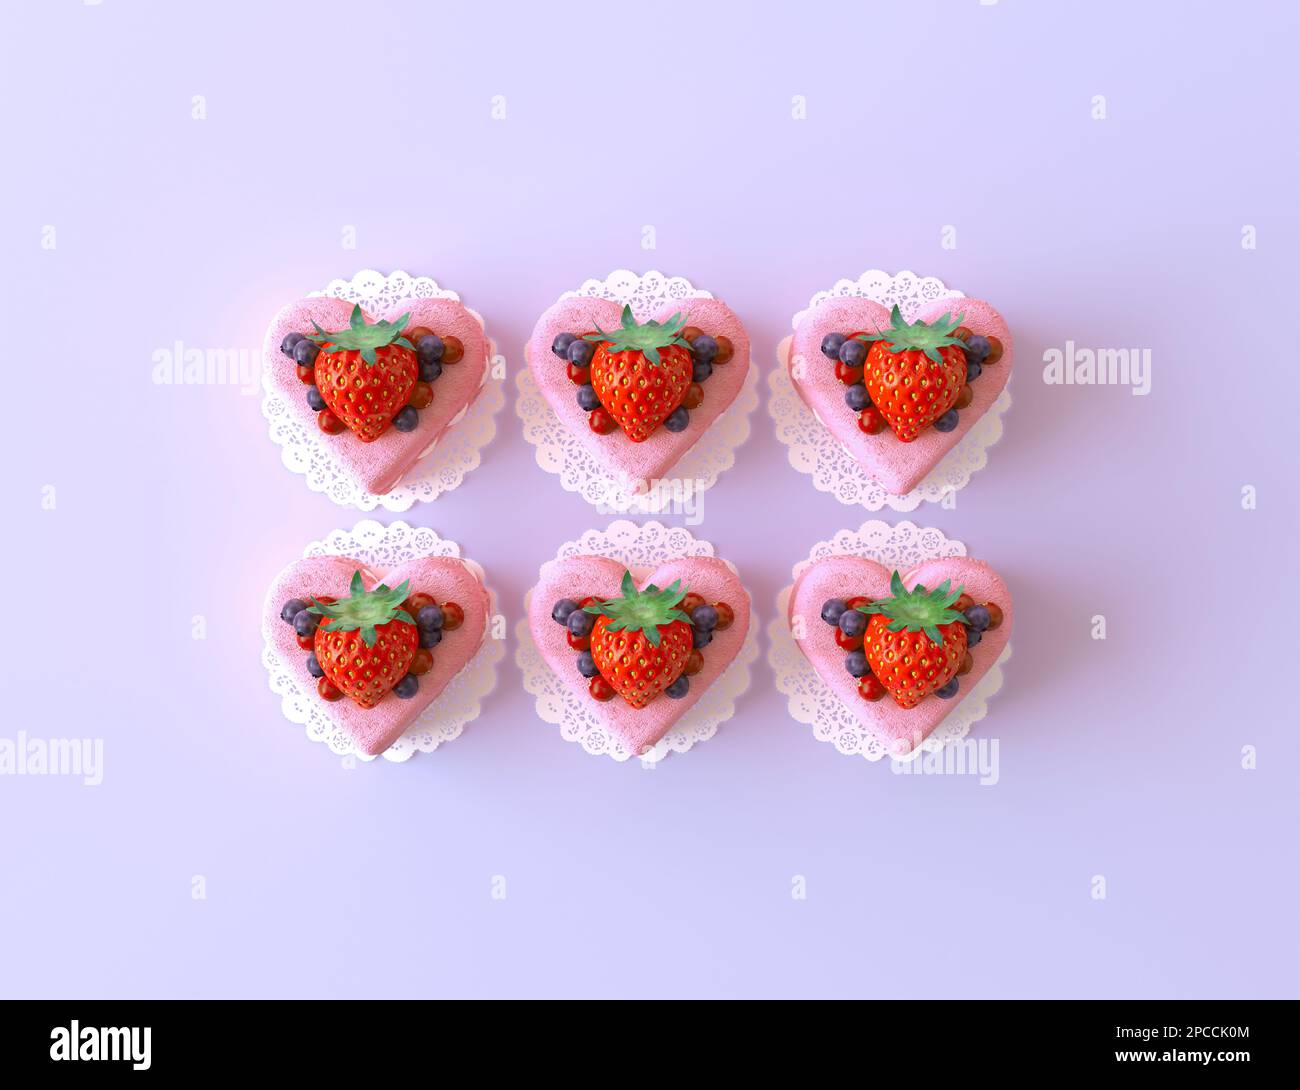 Rosafarbene Baiser in Form von Liebesherzen dekoriert mit wilden Beeren und Erdbeeren. Musteransicht von oben, sechs süße Kuchen zum Valentinstag Stockfoto